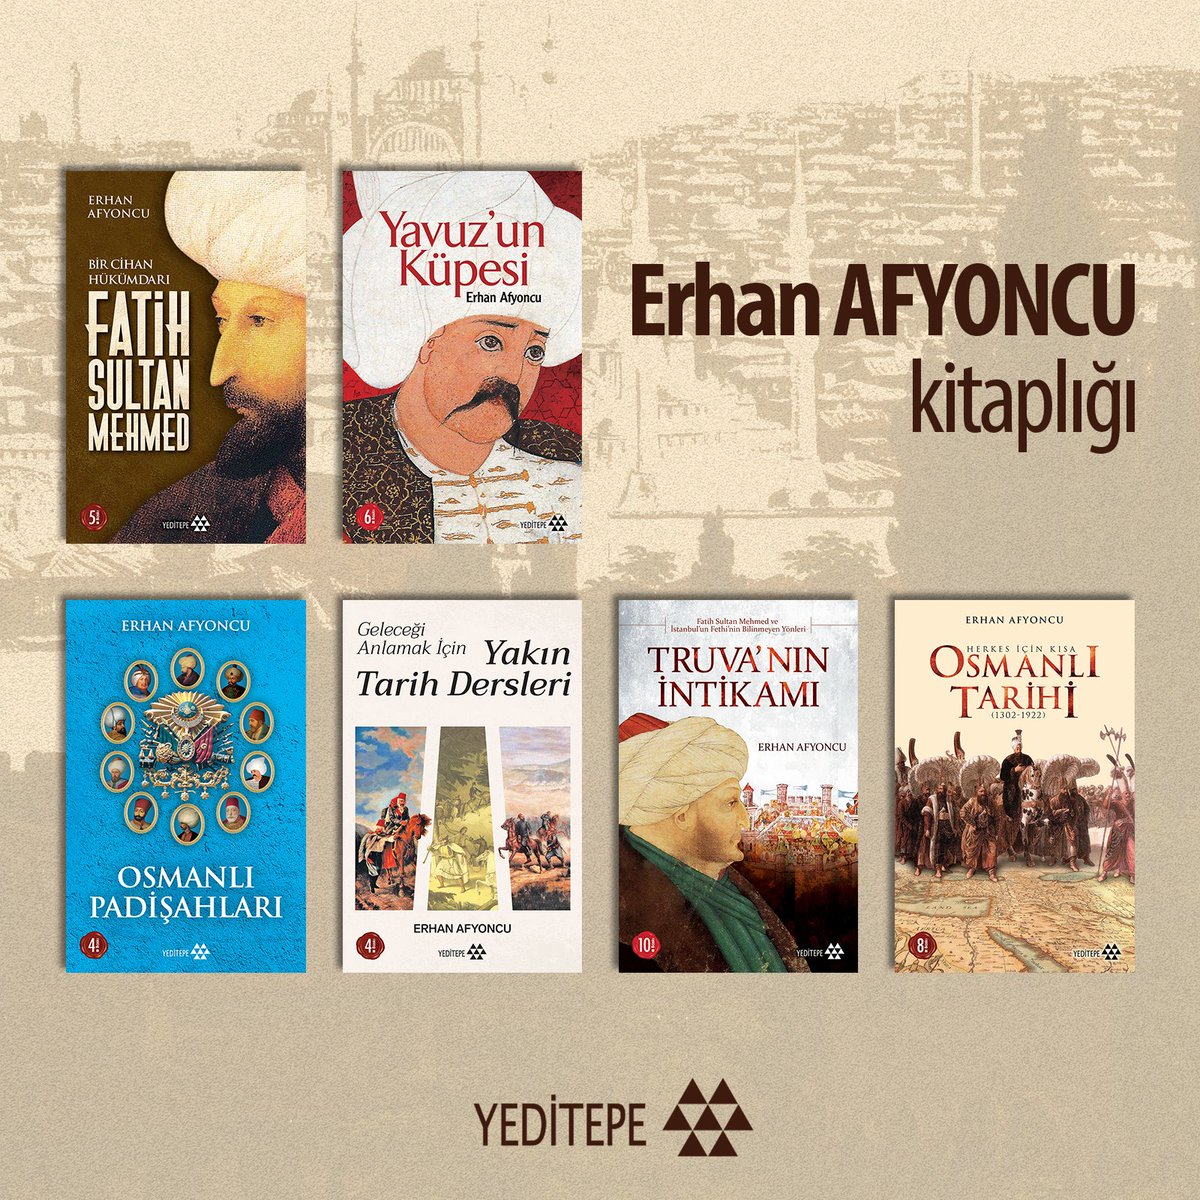 Erhan Afyoncu kitaplığı 📚 #yeditepeyayınevi #ErhanAfyoncu